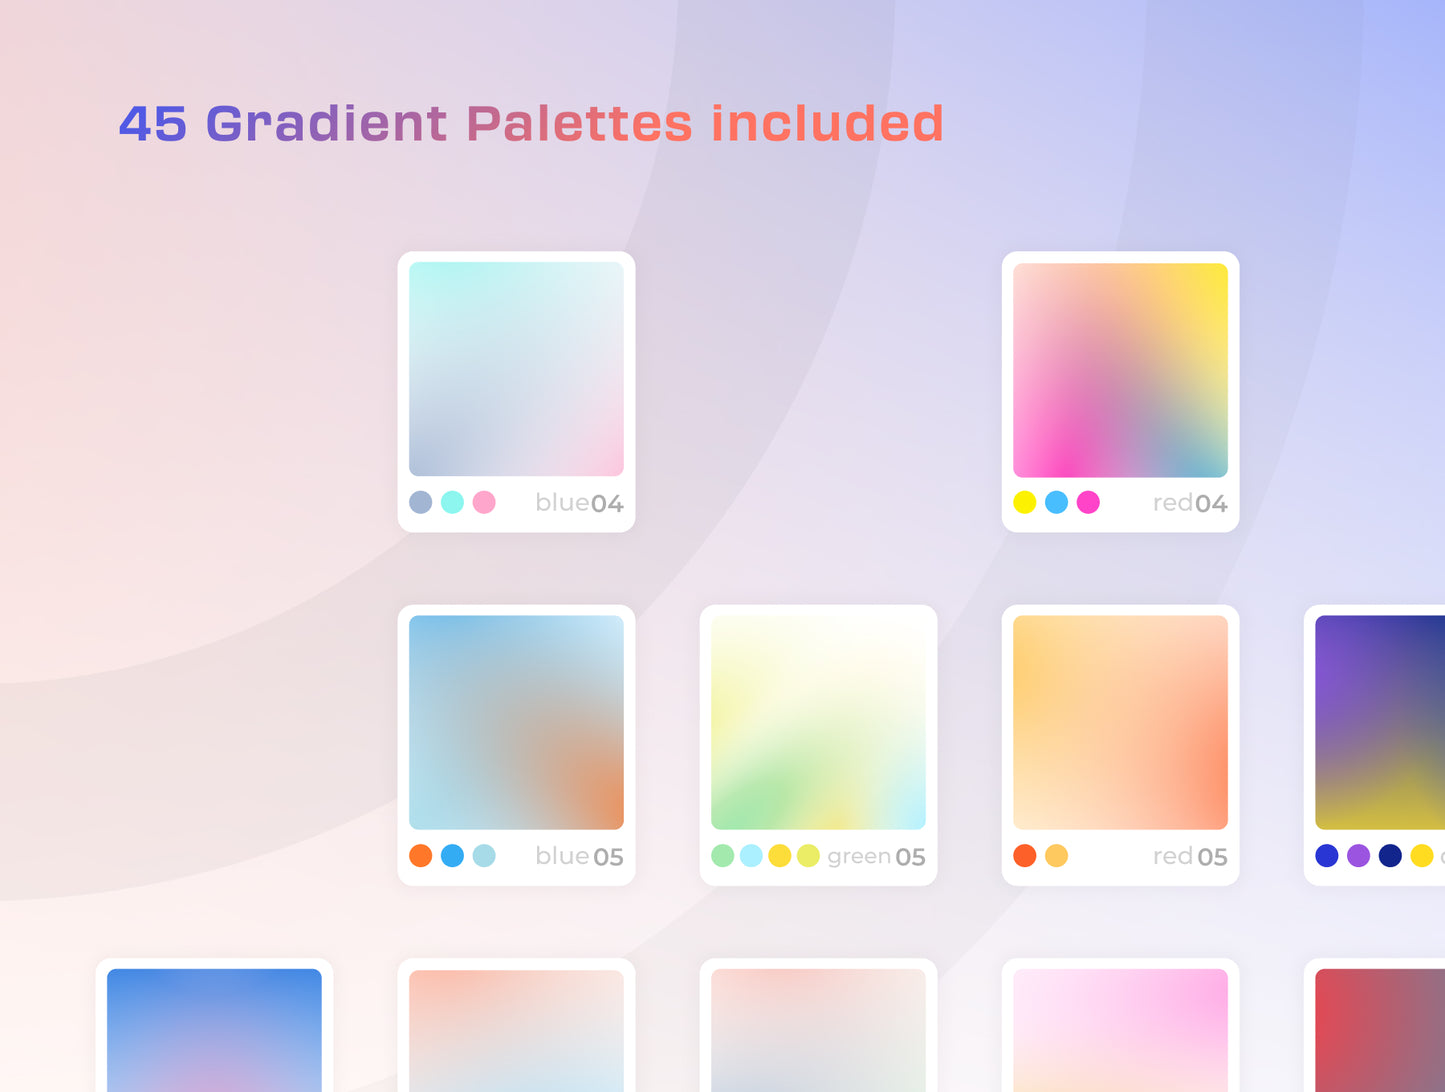 Gradiea Kit - Web3 Gradient Backgrounds